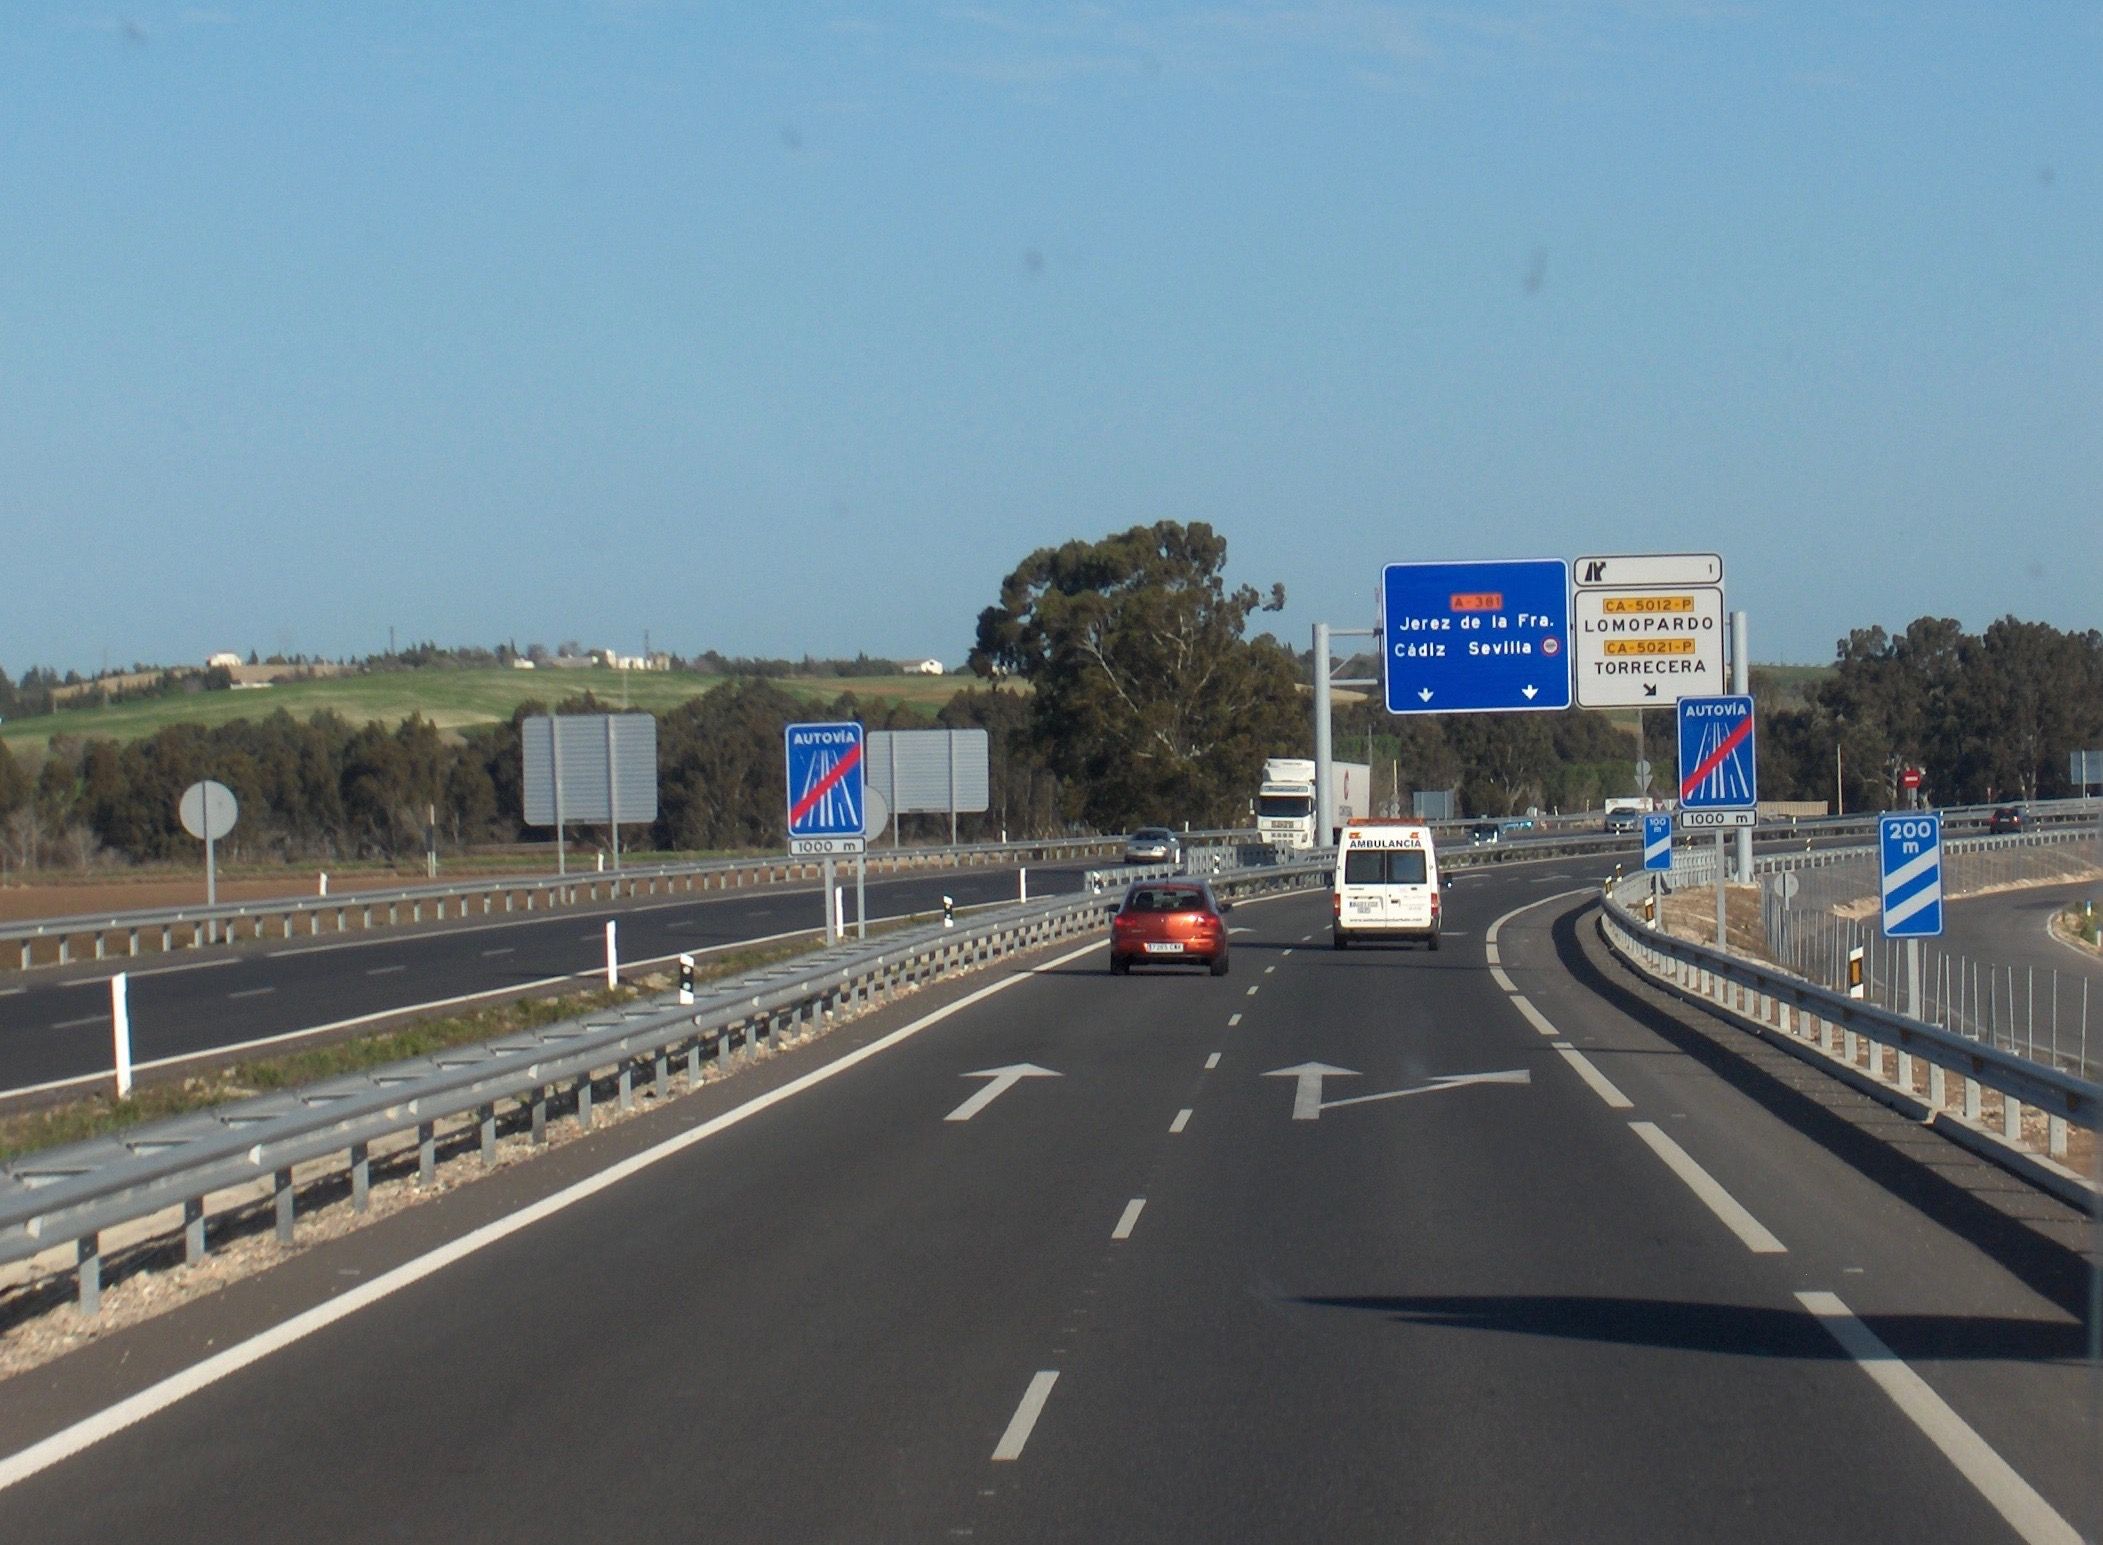 Energía fotovoltaica y eólica para iluminar los túneles de la autovía Jerez-Los Barrios. En la majen, la salida de Jerez por la autovía A-381.